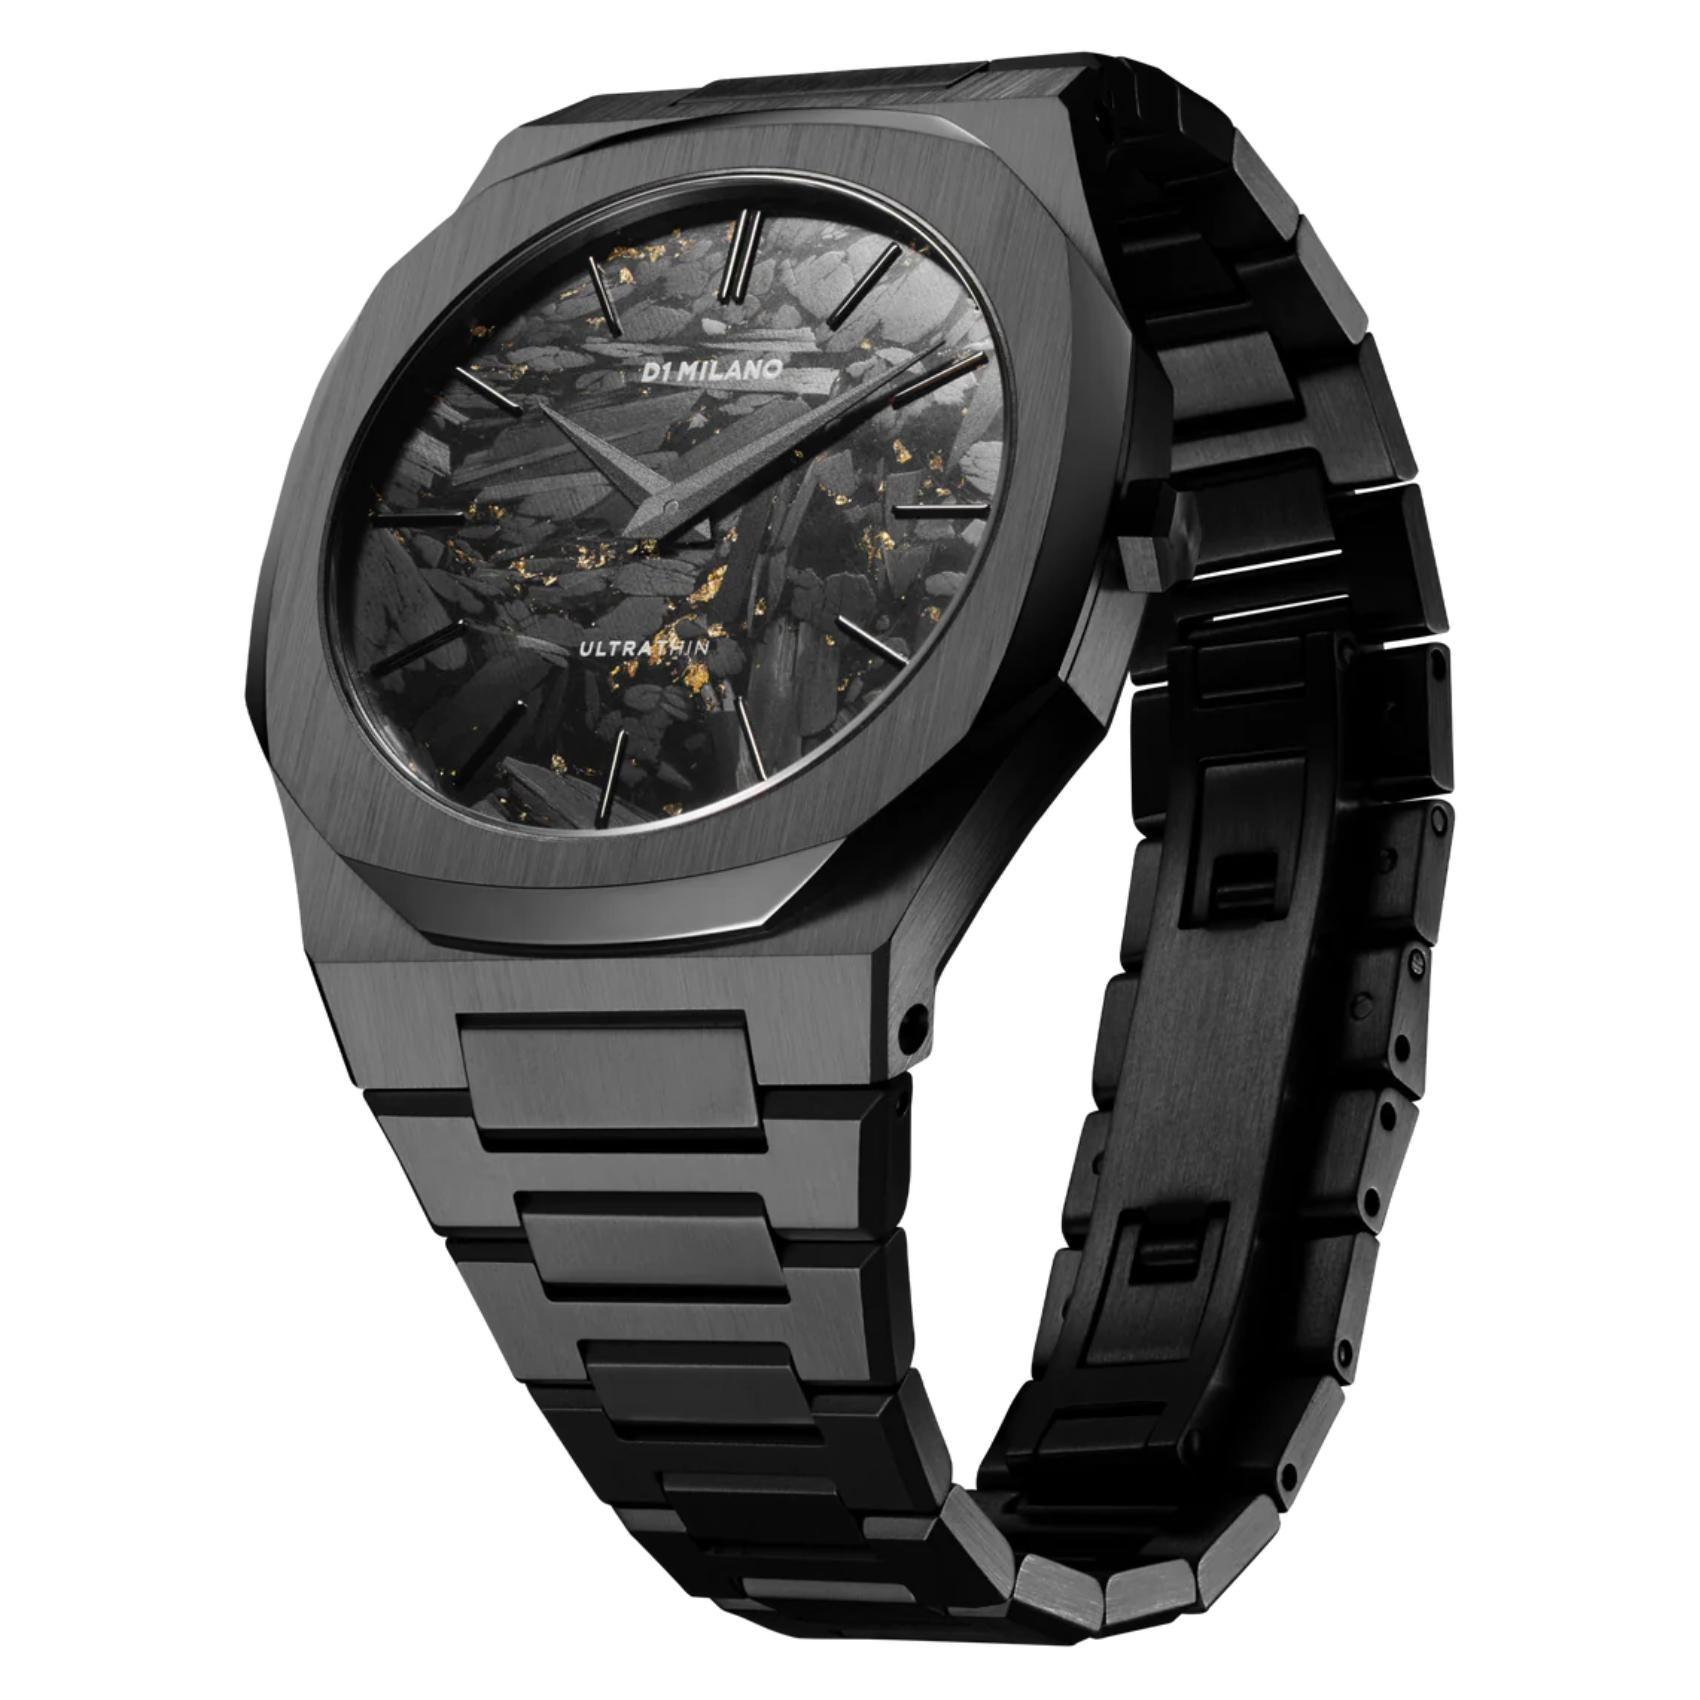 Αντρικό ρολόι D1 Milano Black Dlc Ultra Thin D1-UTBJ31 με μαύρο ατσάλινο μπρασελέ και μαύρο καντράν 40mm με οκτάγωνο σχήμα.